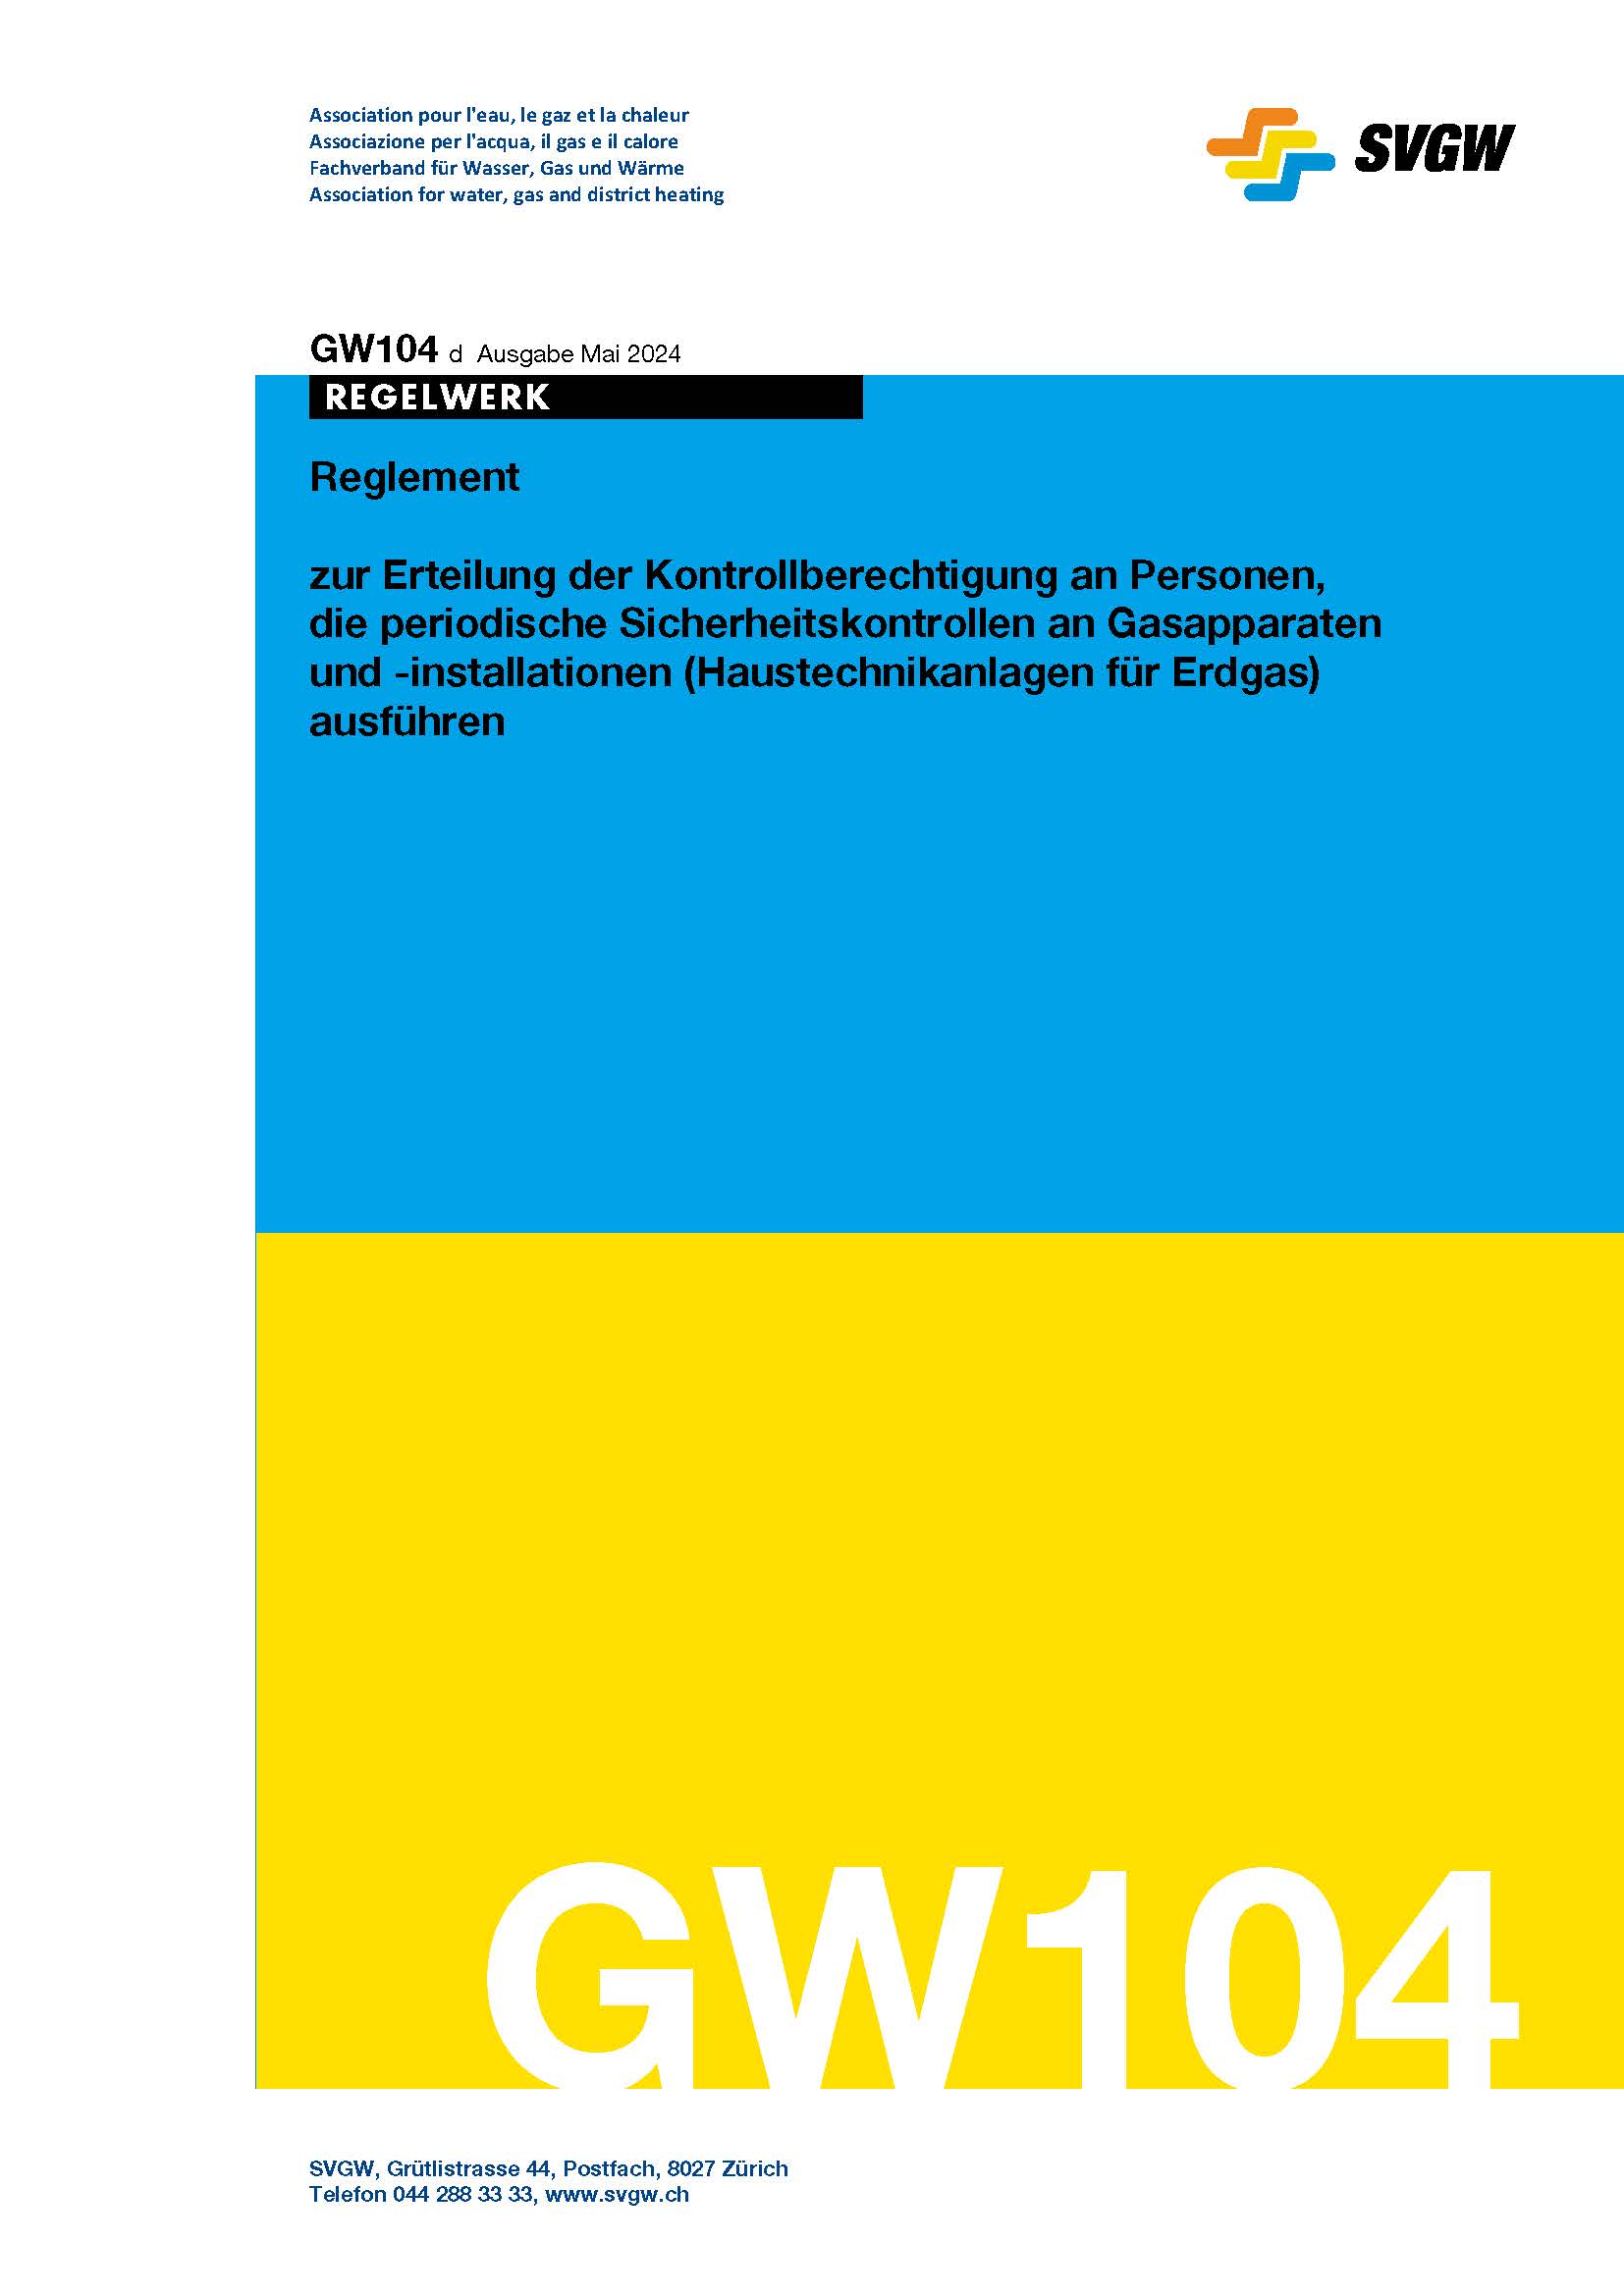 GW104 d Reglement zur Erteilung der Kontrollberechtigung an Personen, die periodische Sicherheitskontrollen an Gasapparaten und -installationen (Haustechnikanlagen für Erdgas) ausführen